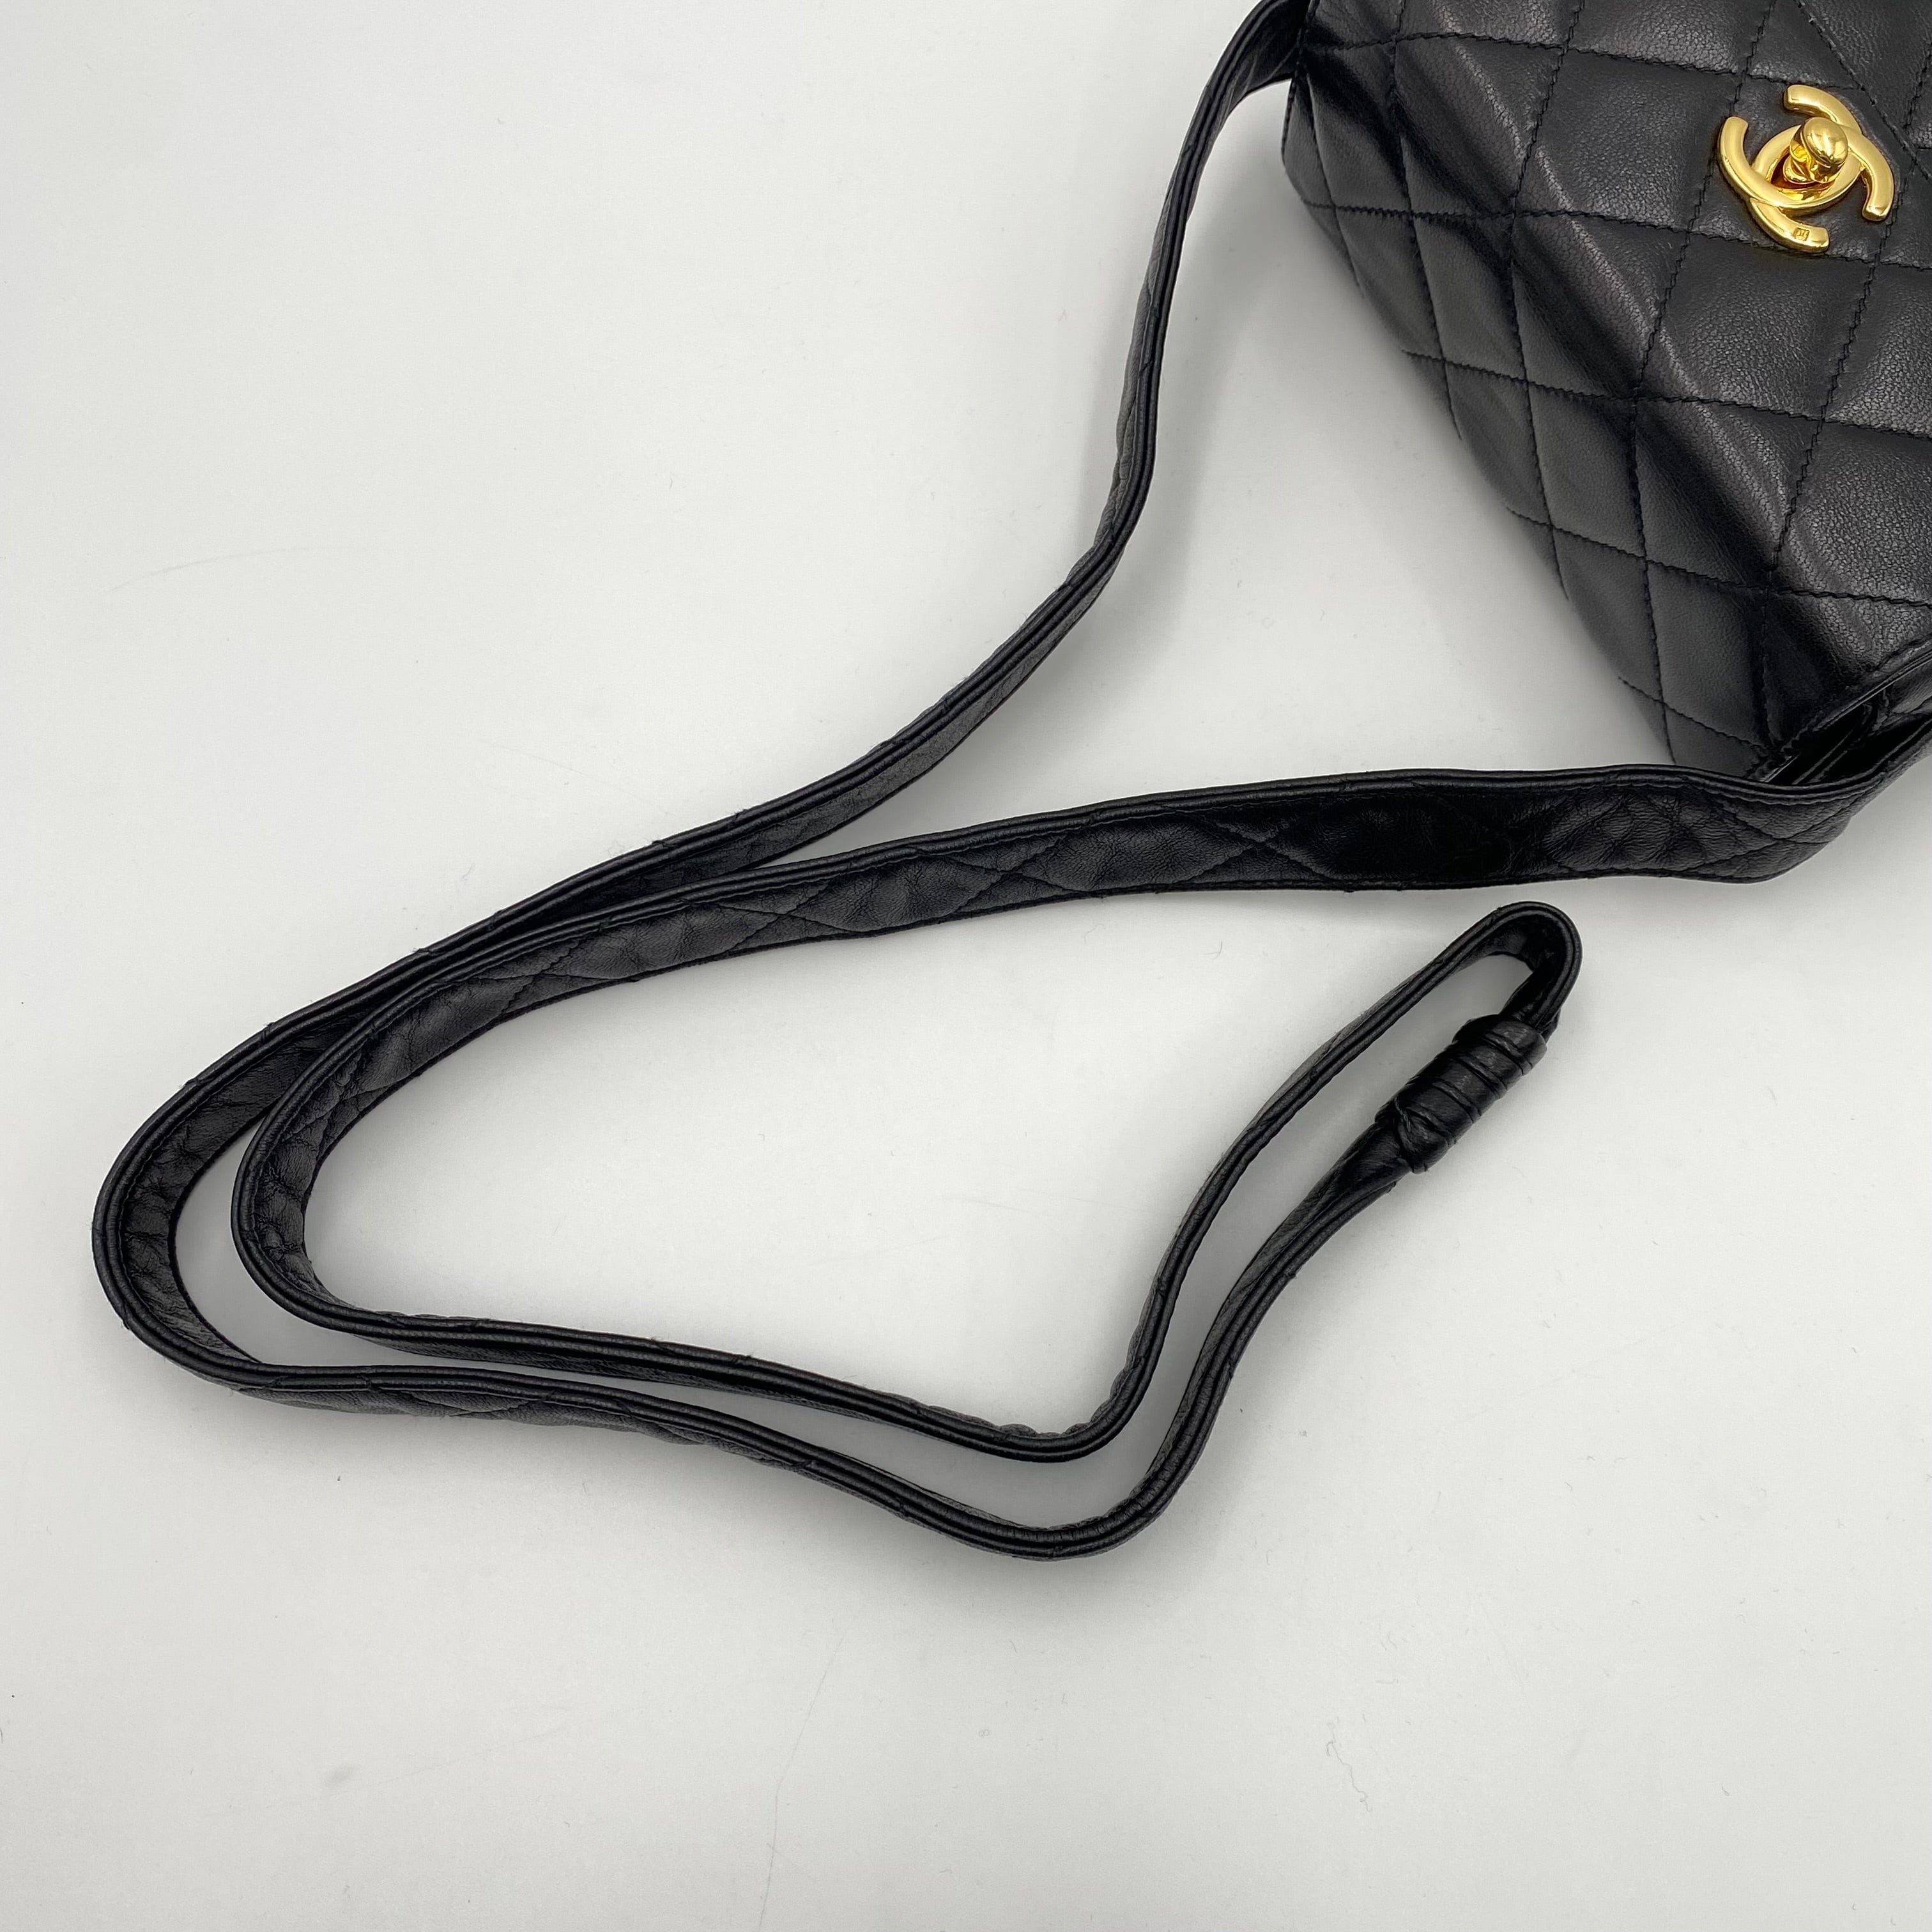 Chanel Chanel Vintage Mini Shoulder Satchel Black Lambskin #4 90220667